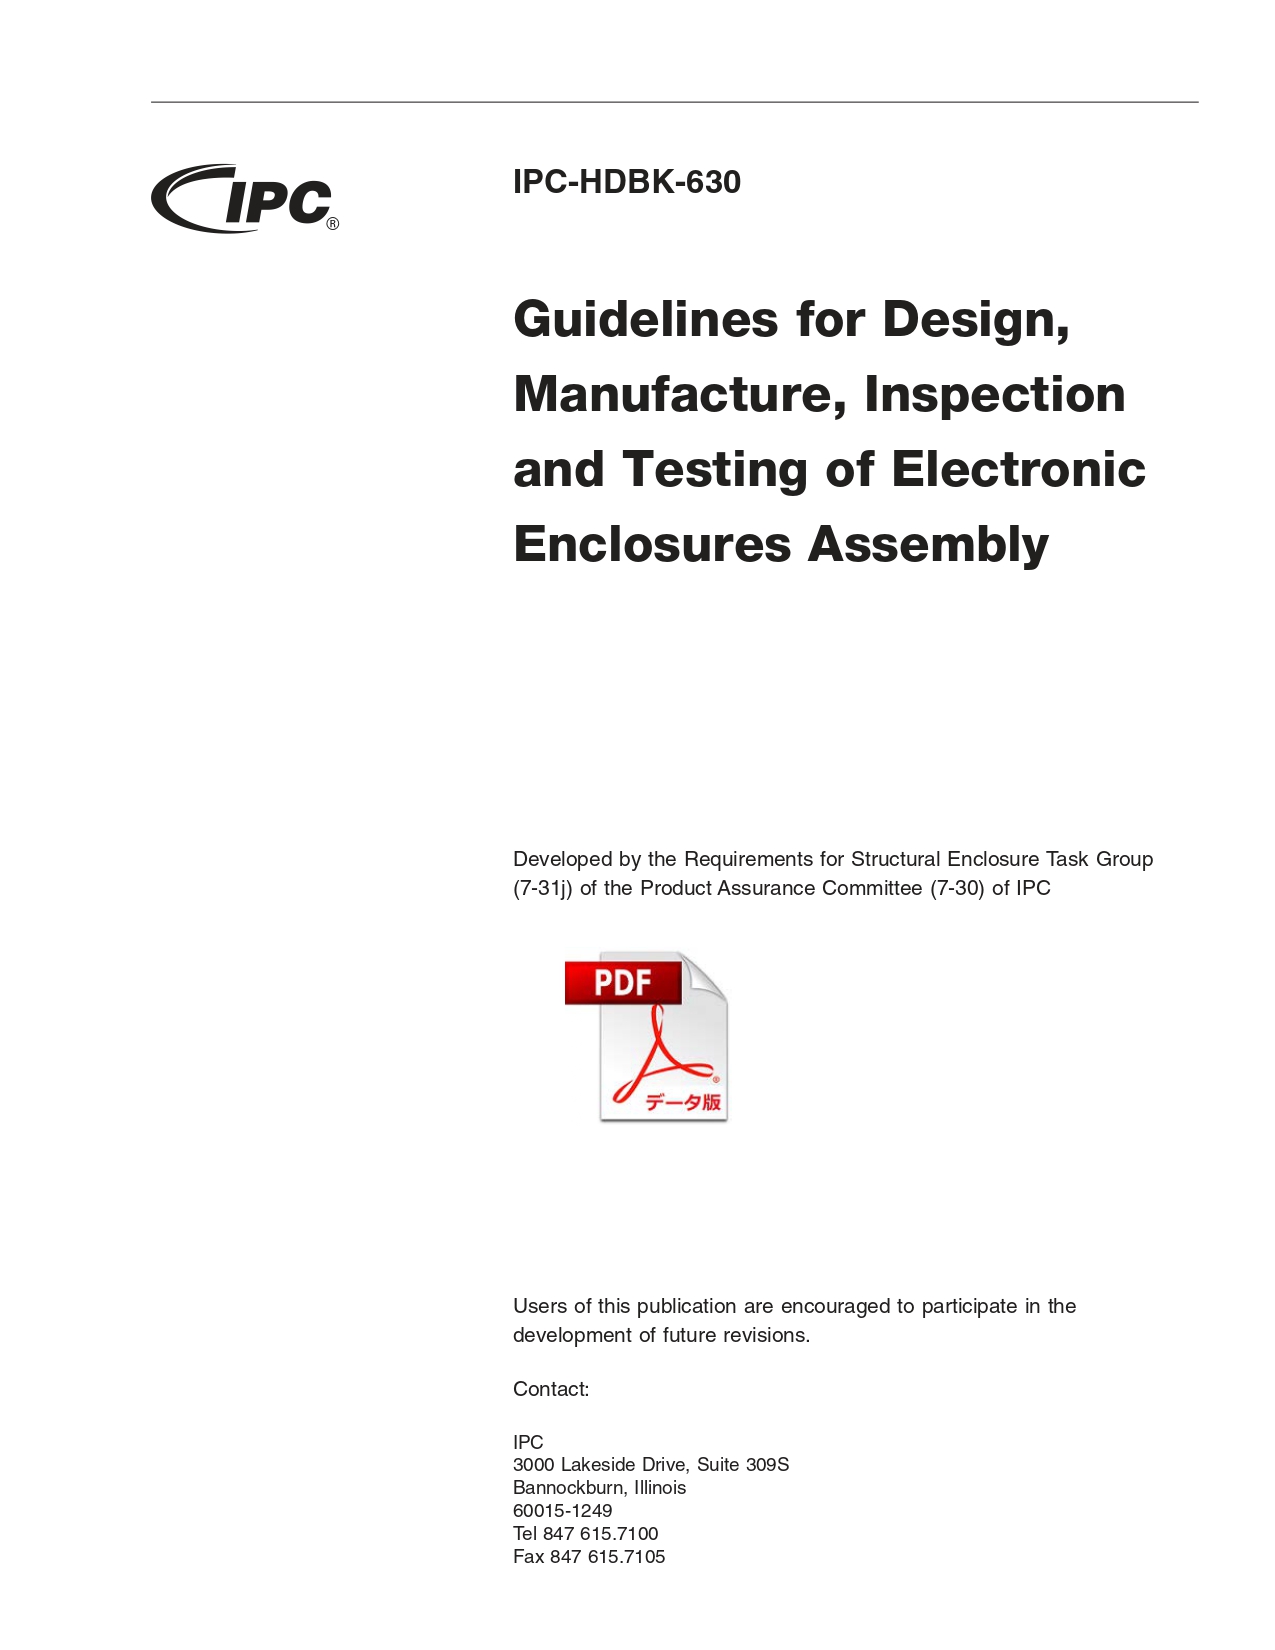 ［英語版］IPC-HDBK-630: Guidelines for Design, Manufacture, Inspection and Testing of Electronic Enclosures